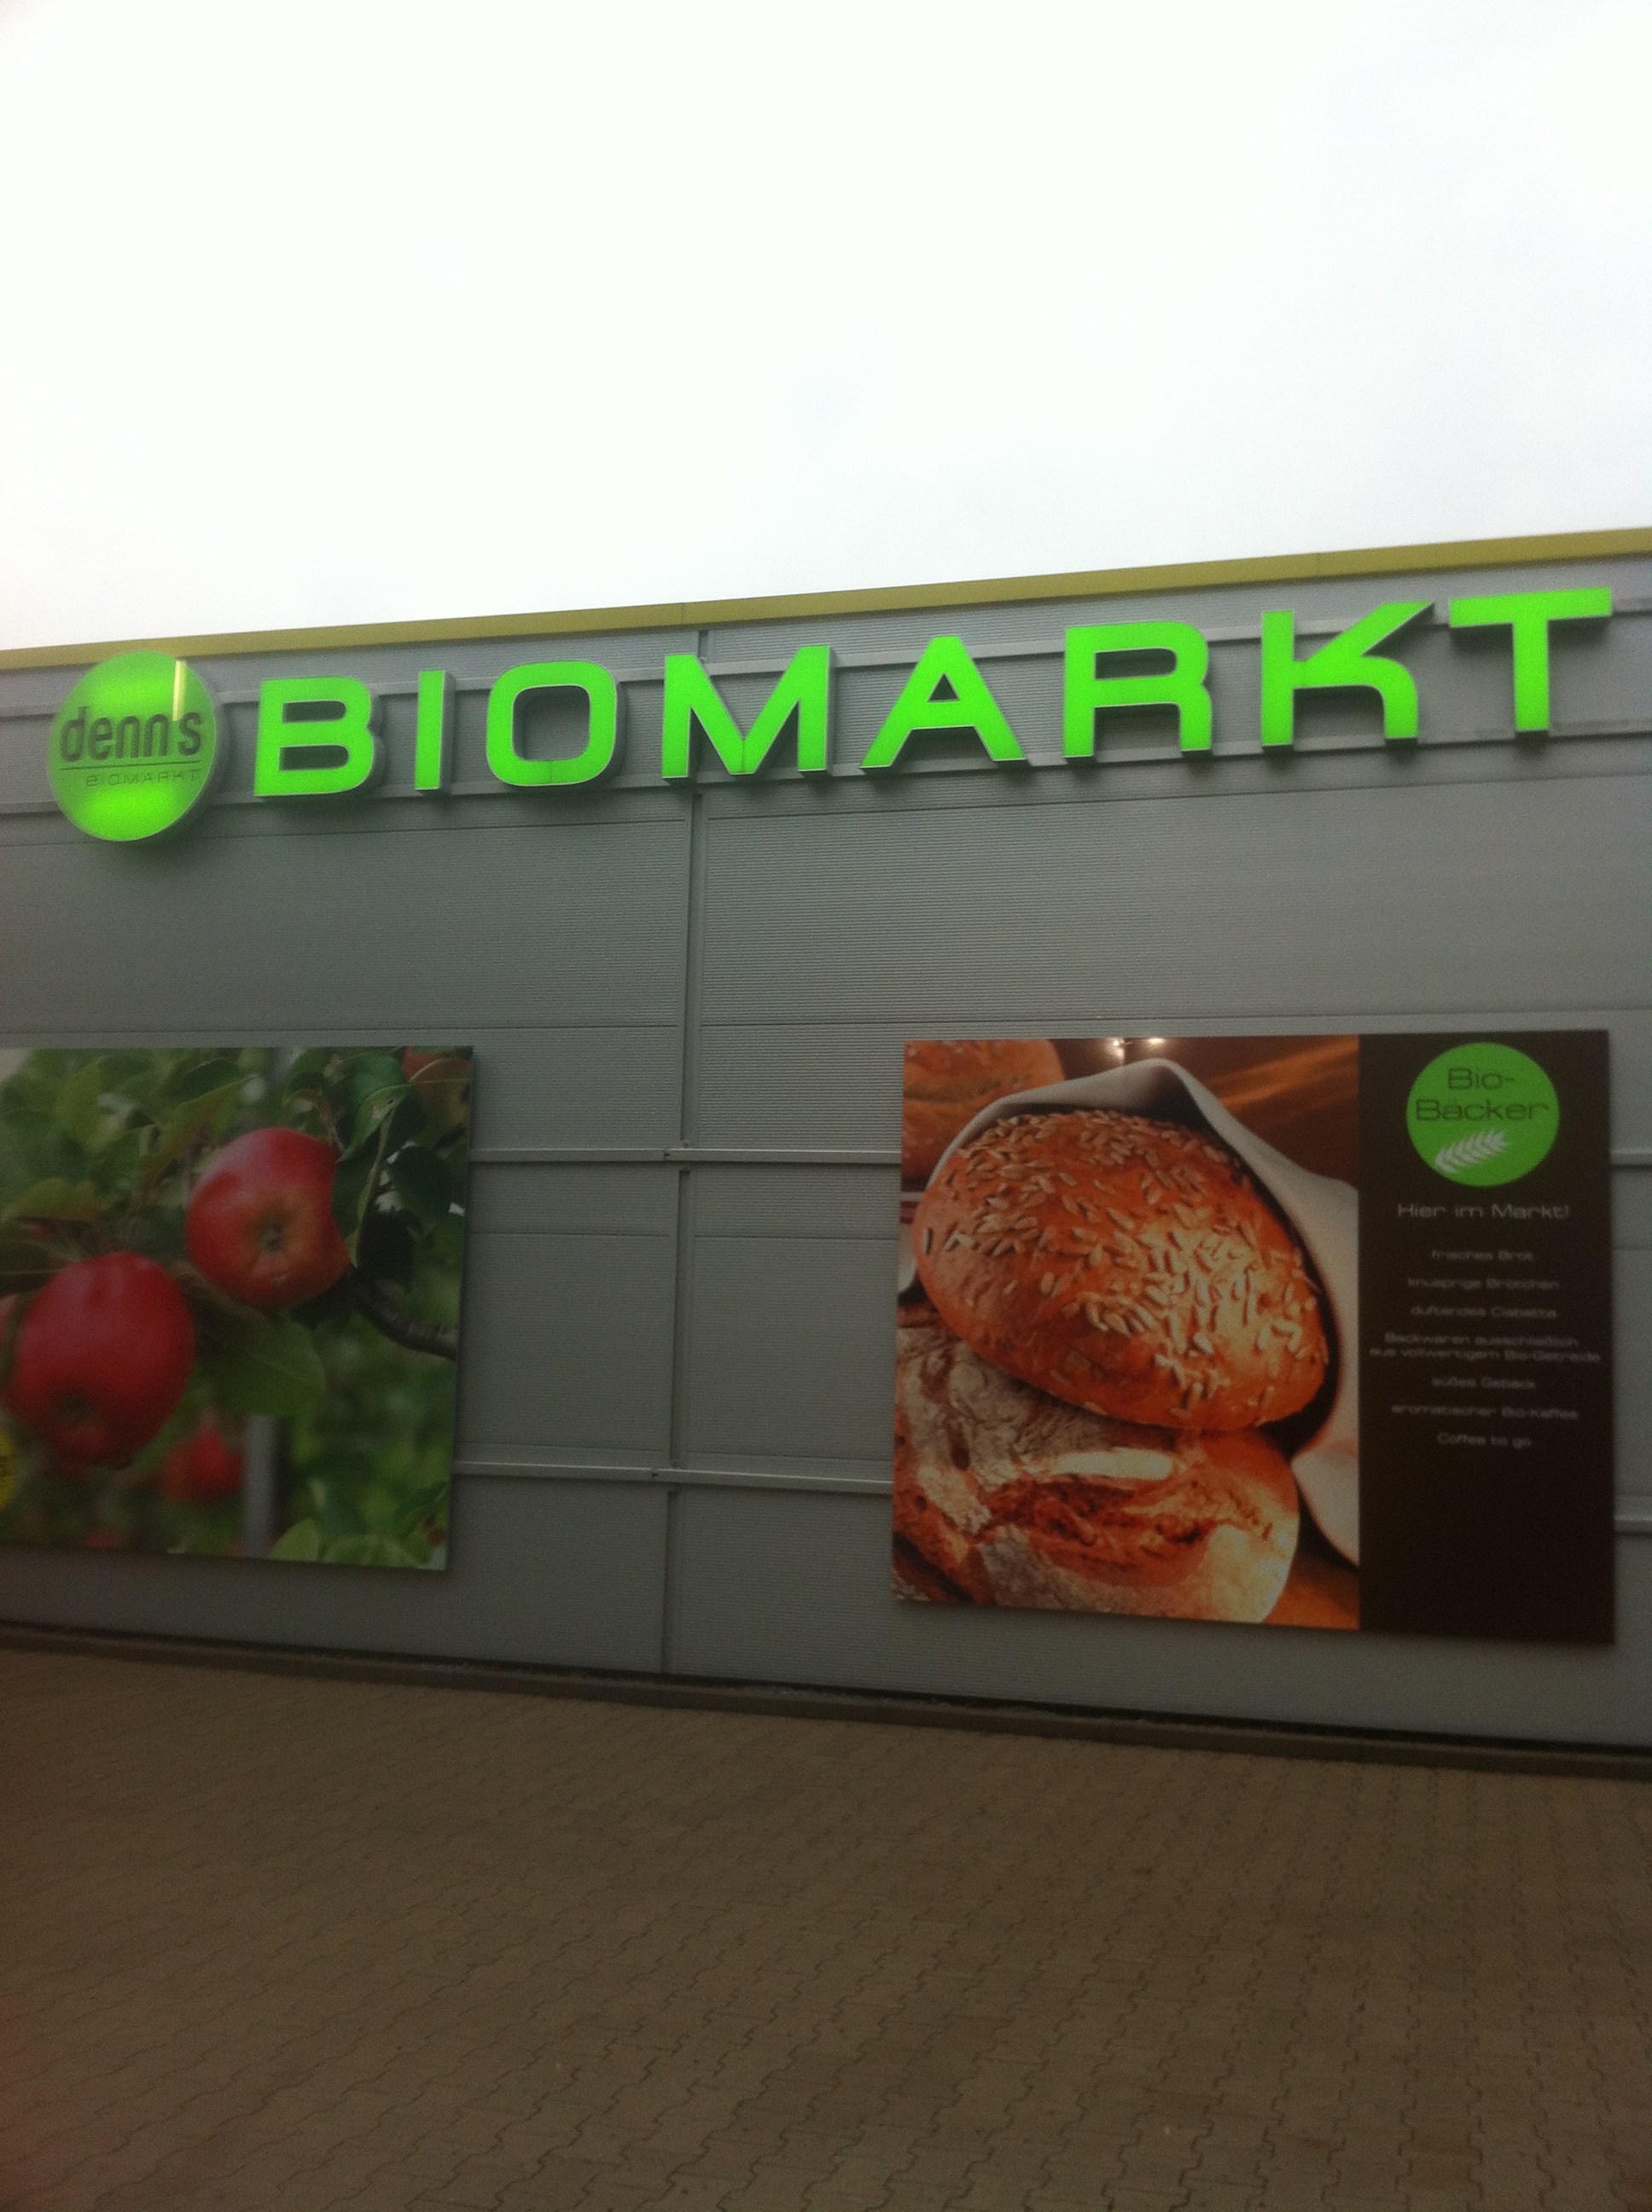 Denns Biomarkt in Minden